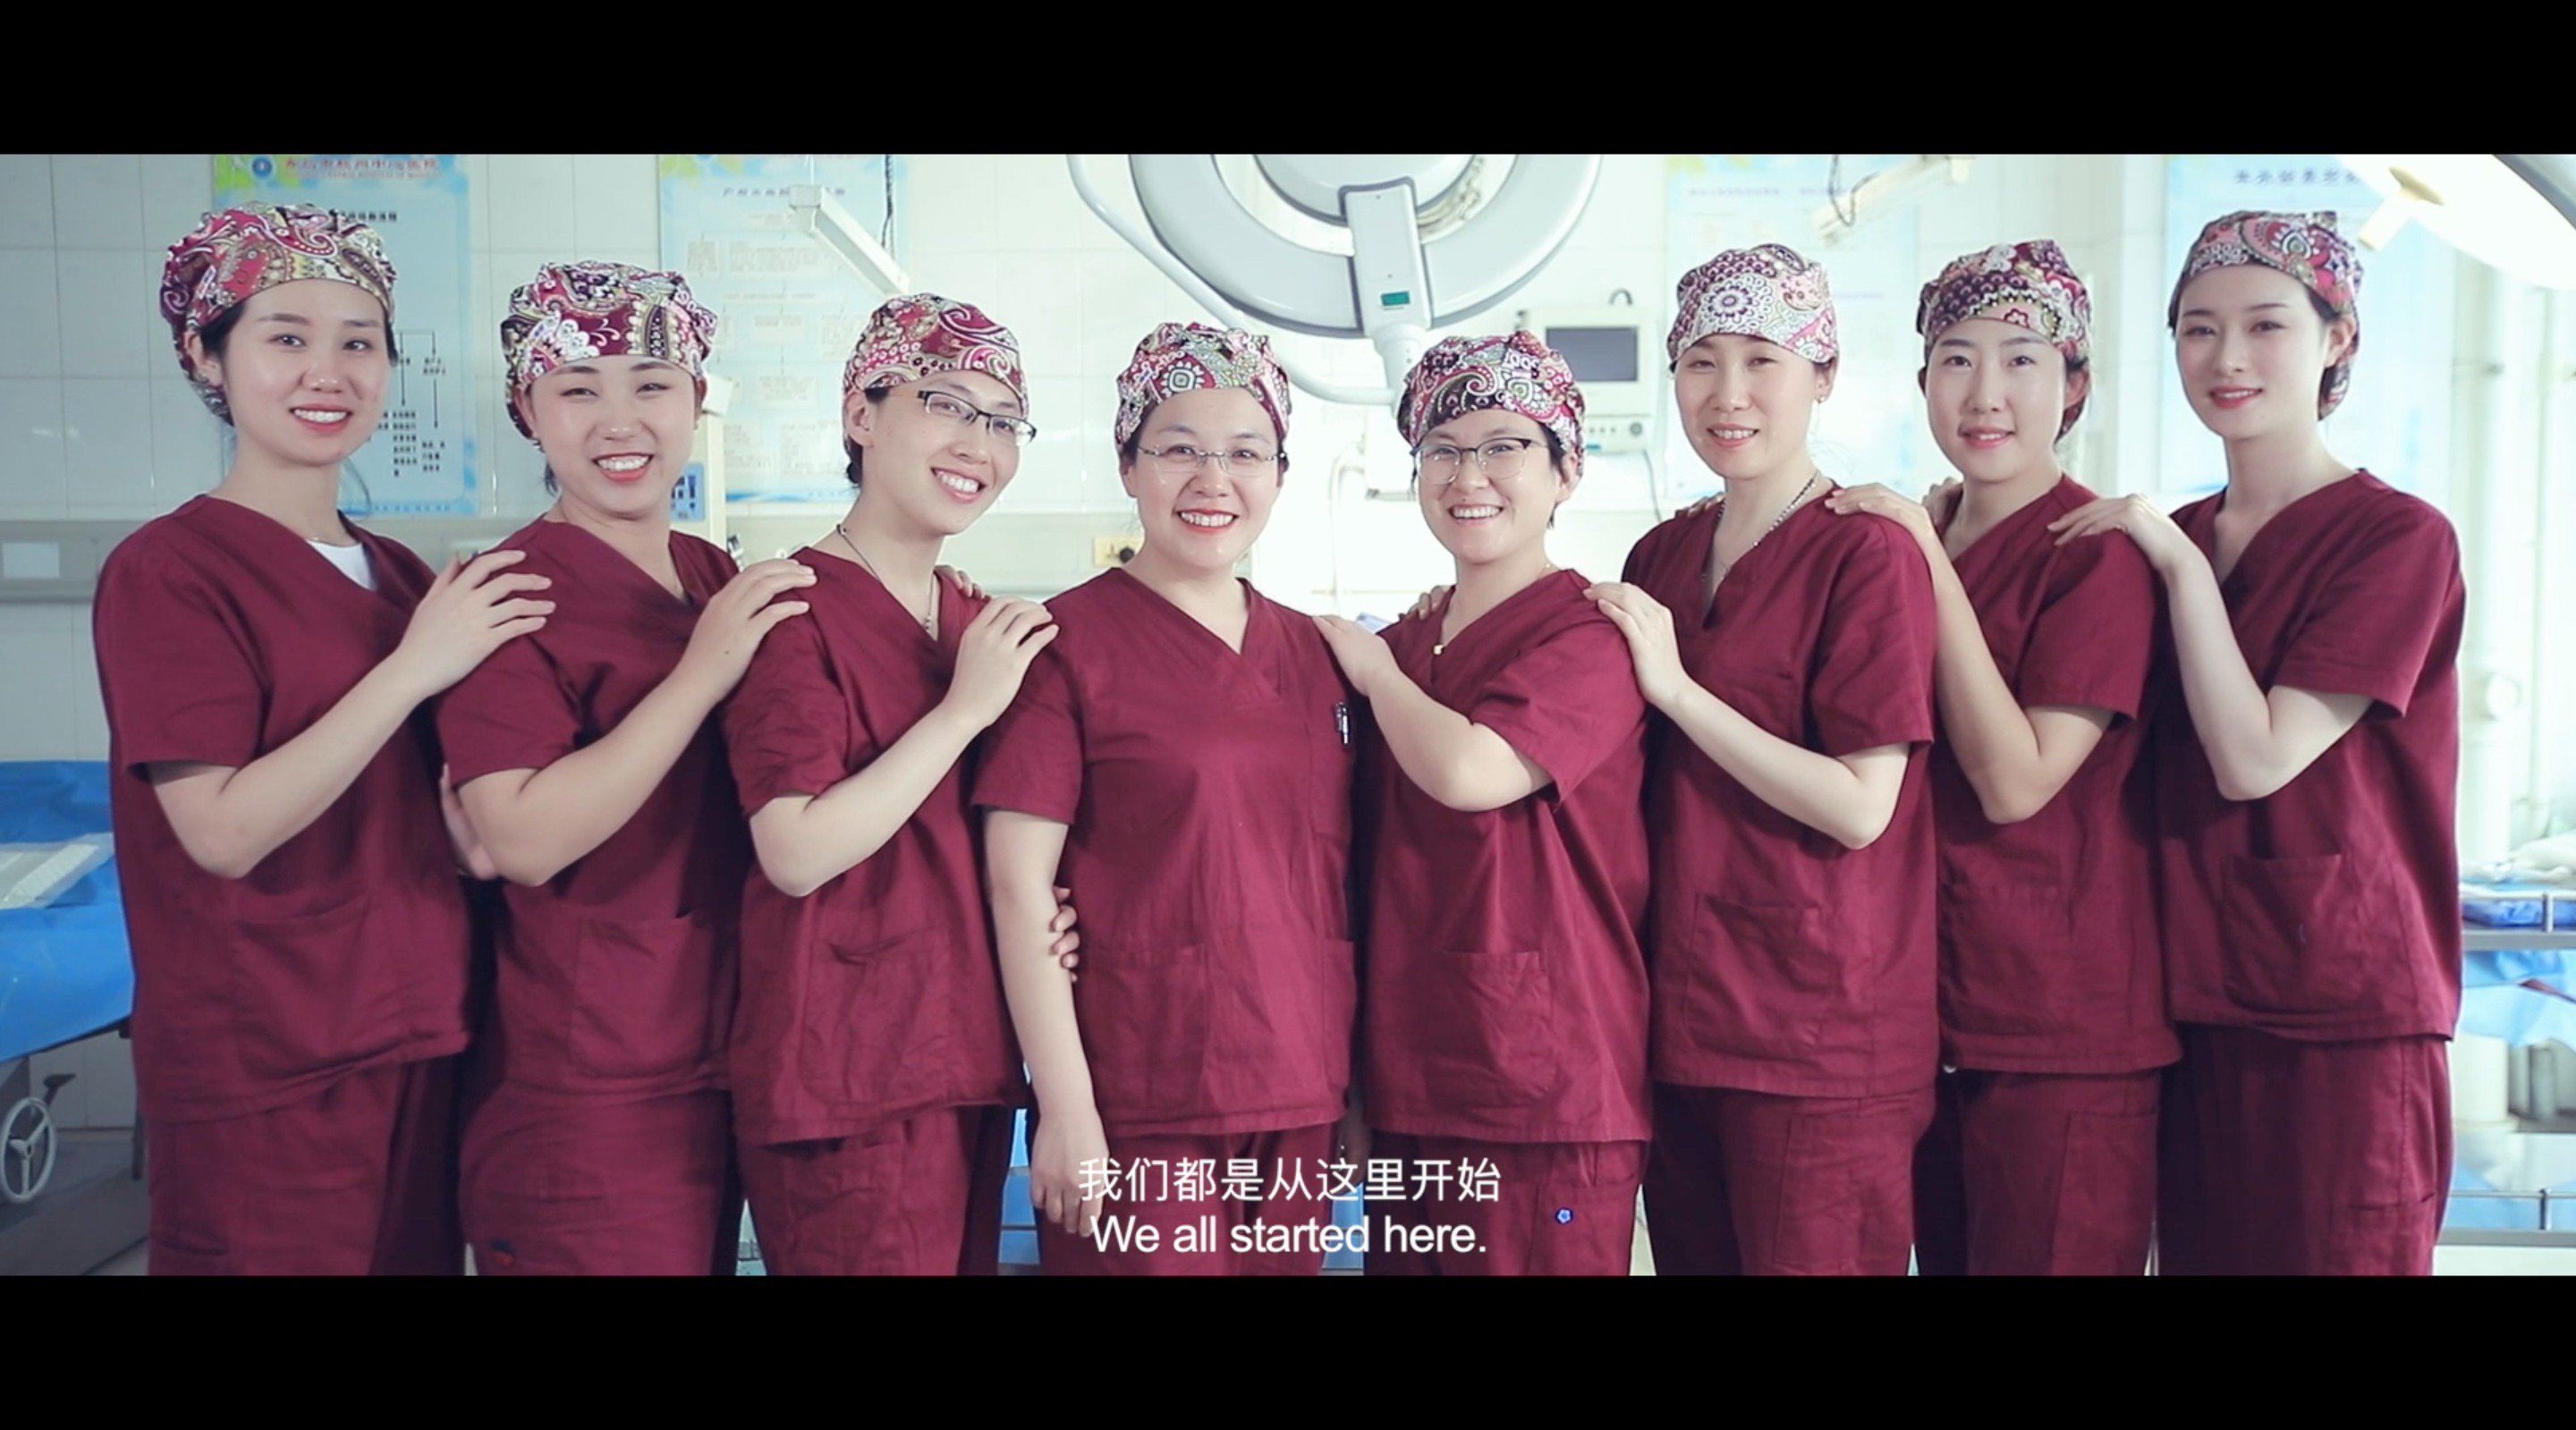 海上印象作品：微电影《生日》致敬所有伟大的产科医护人员 